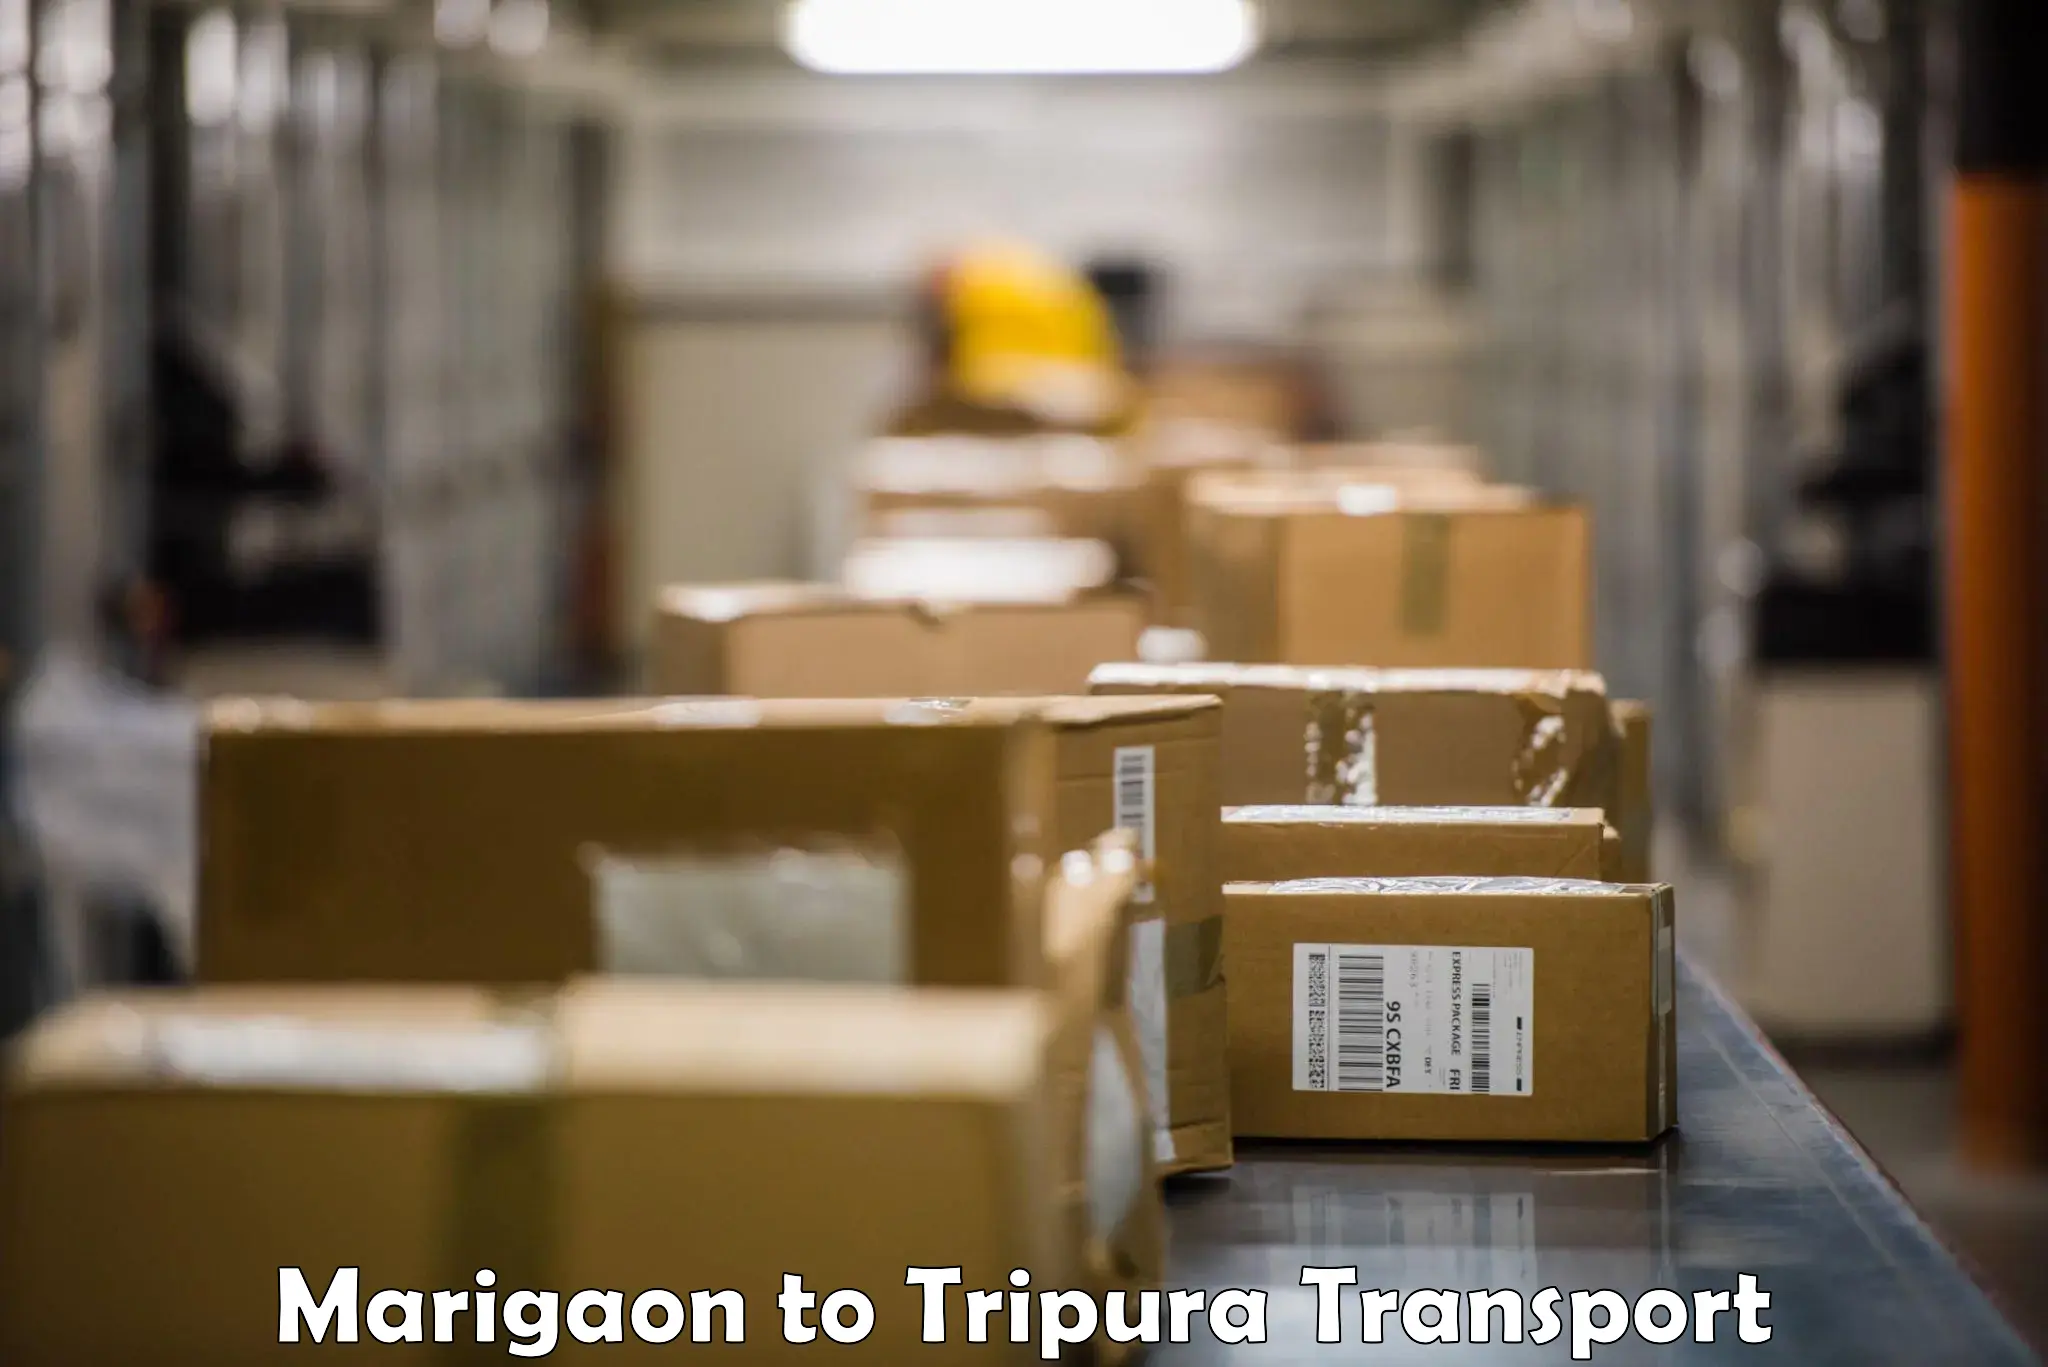 Daily transport service Marigaon to Khowai